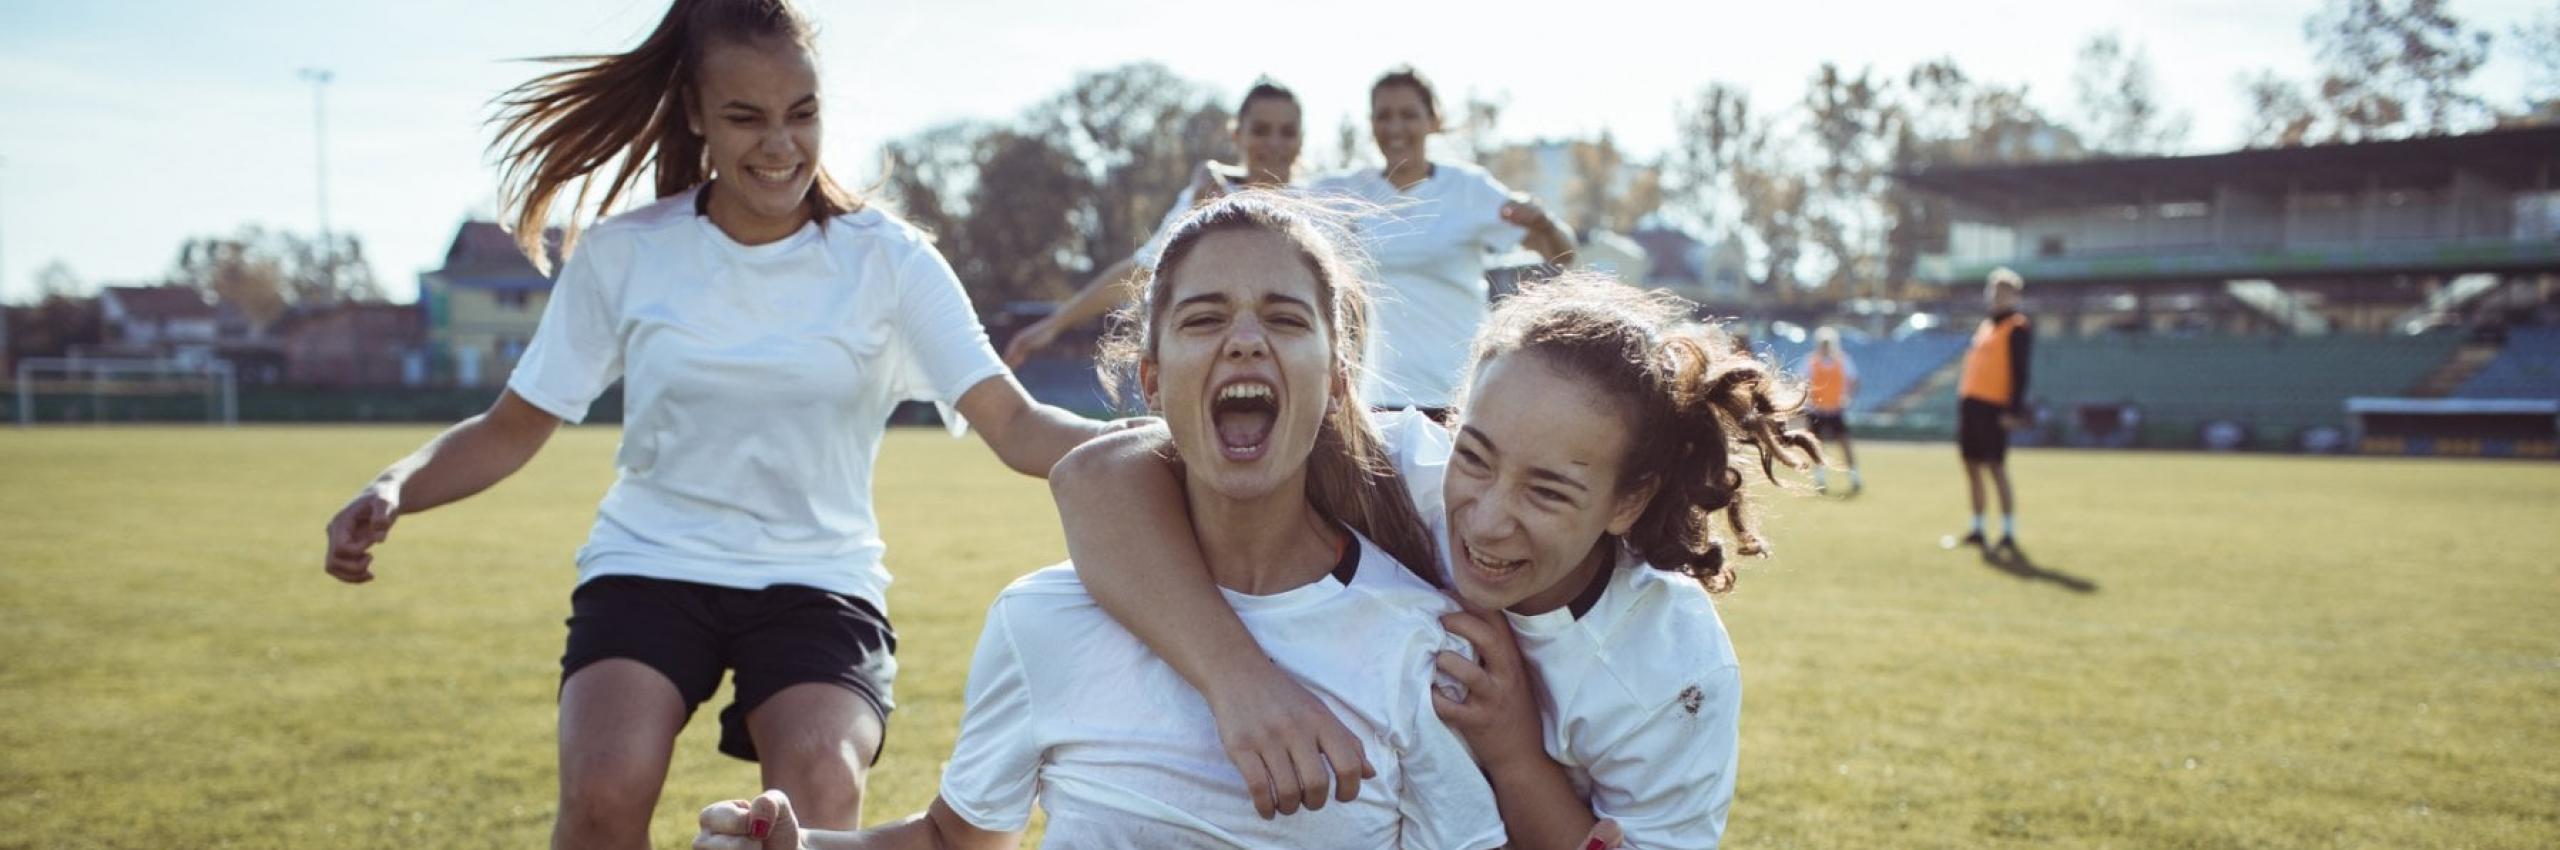 Noi con lo sport femminile per inclusione e diversità